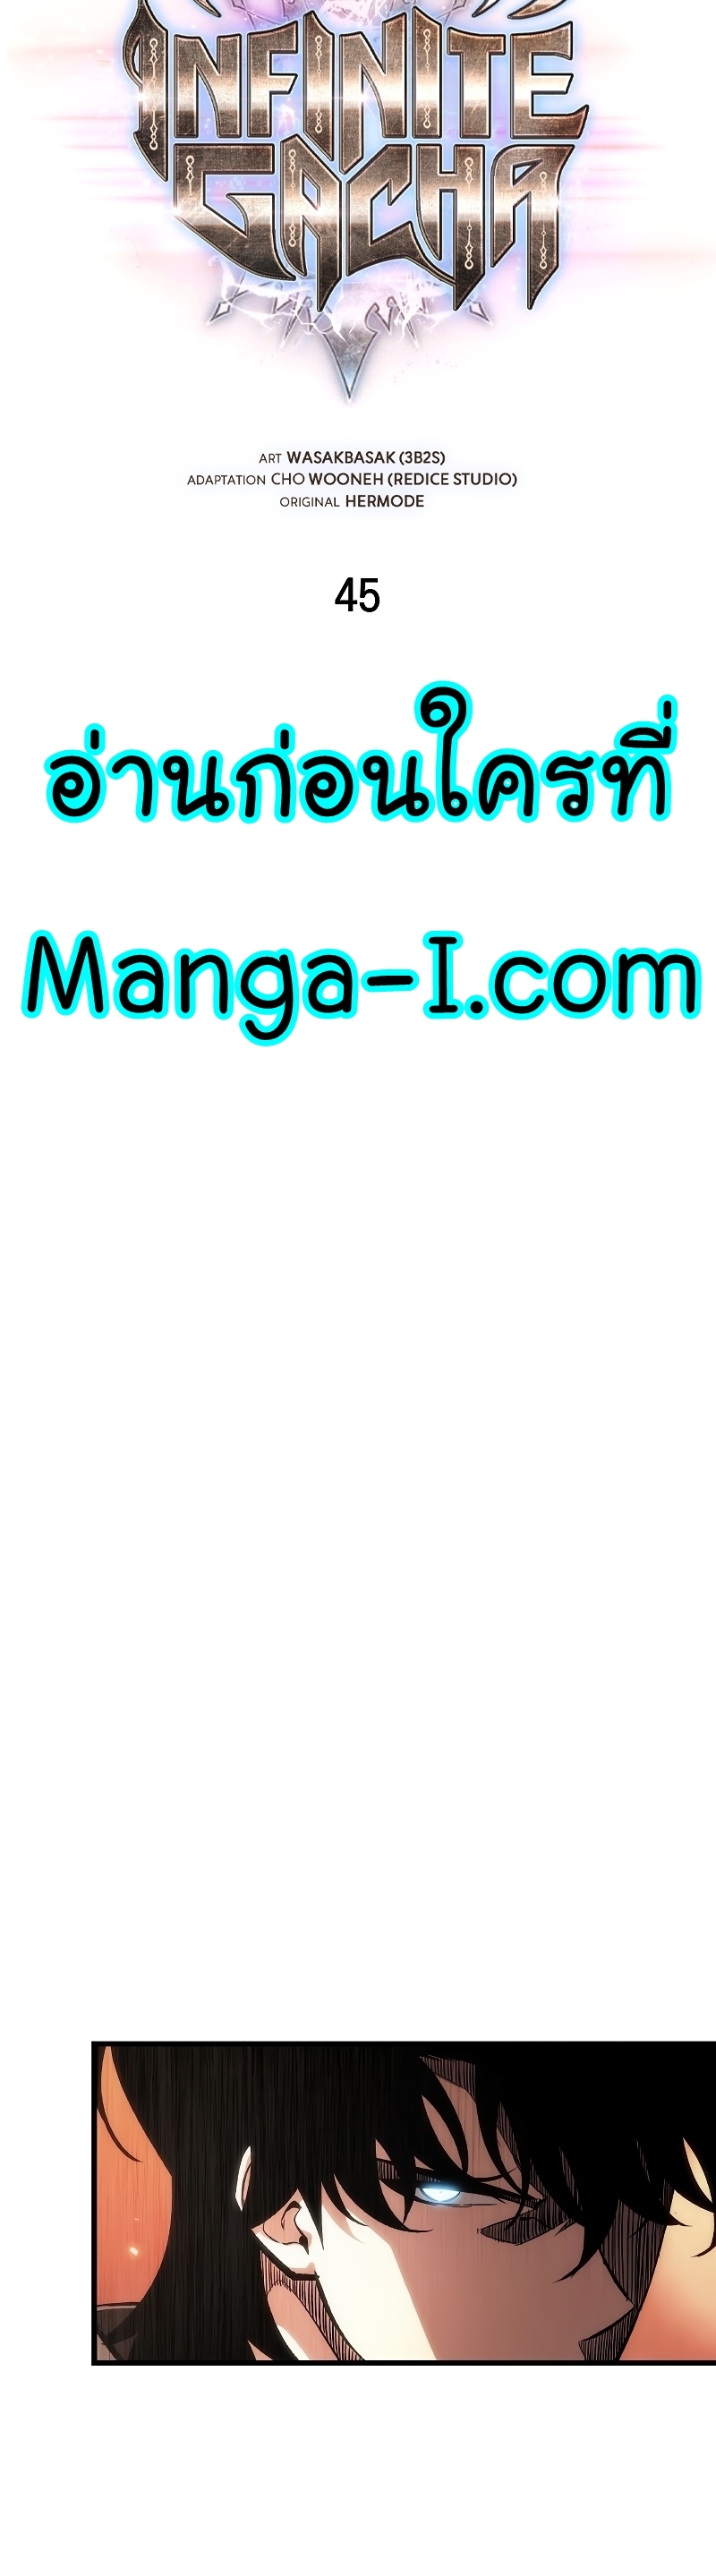 Manga I Manwha Pick Me 45 (12)